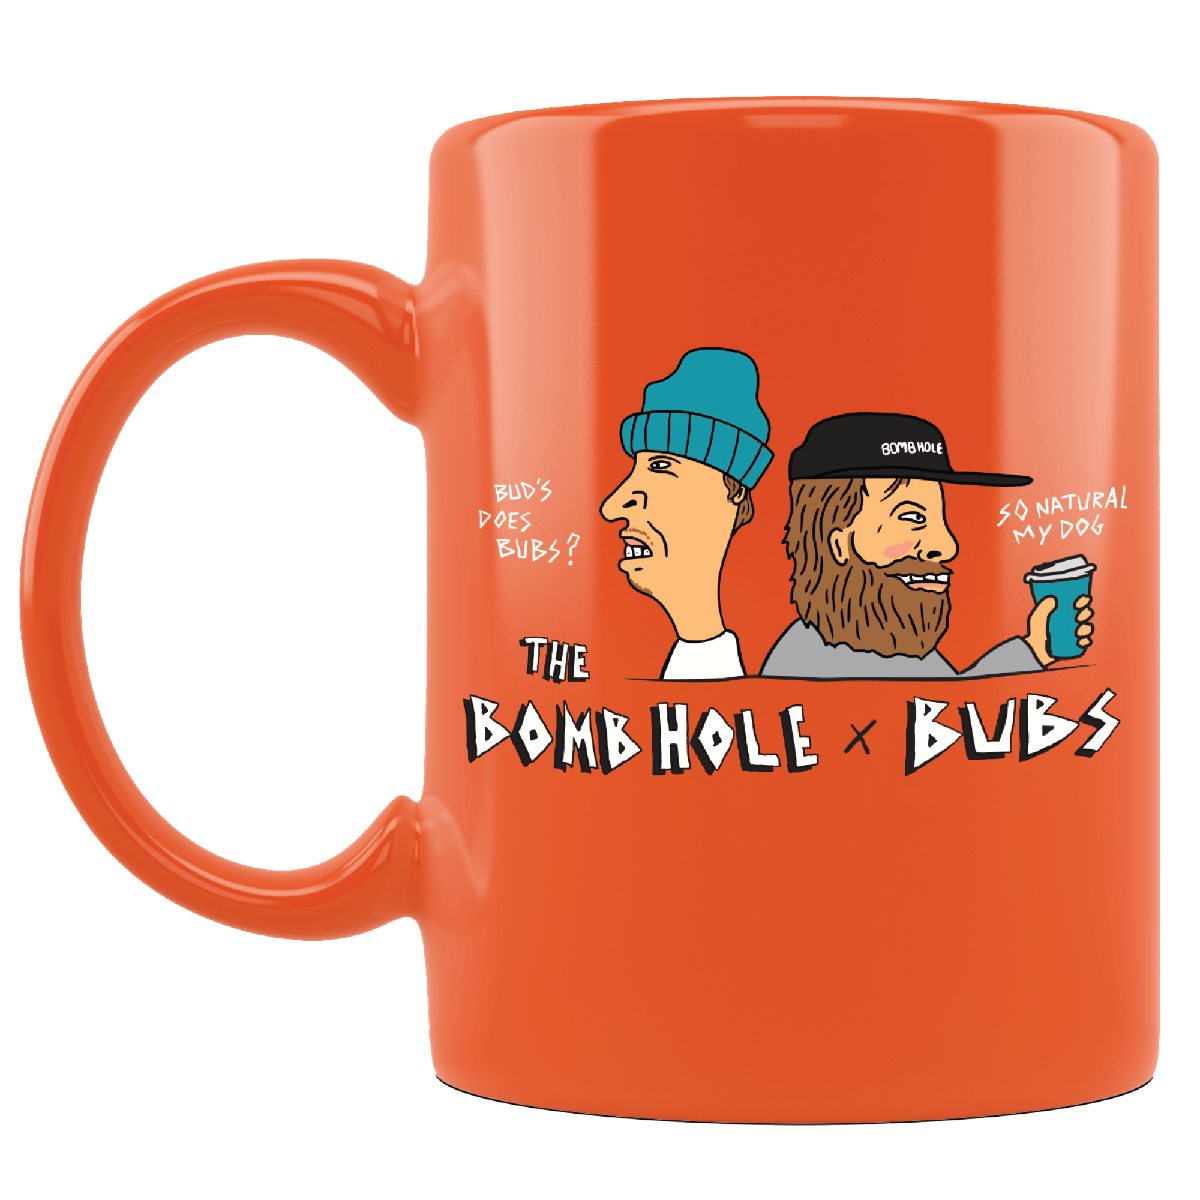 BUBS x The Bomb Hole Mug